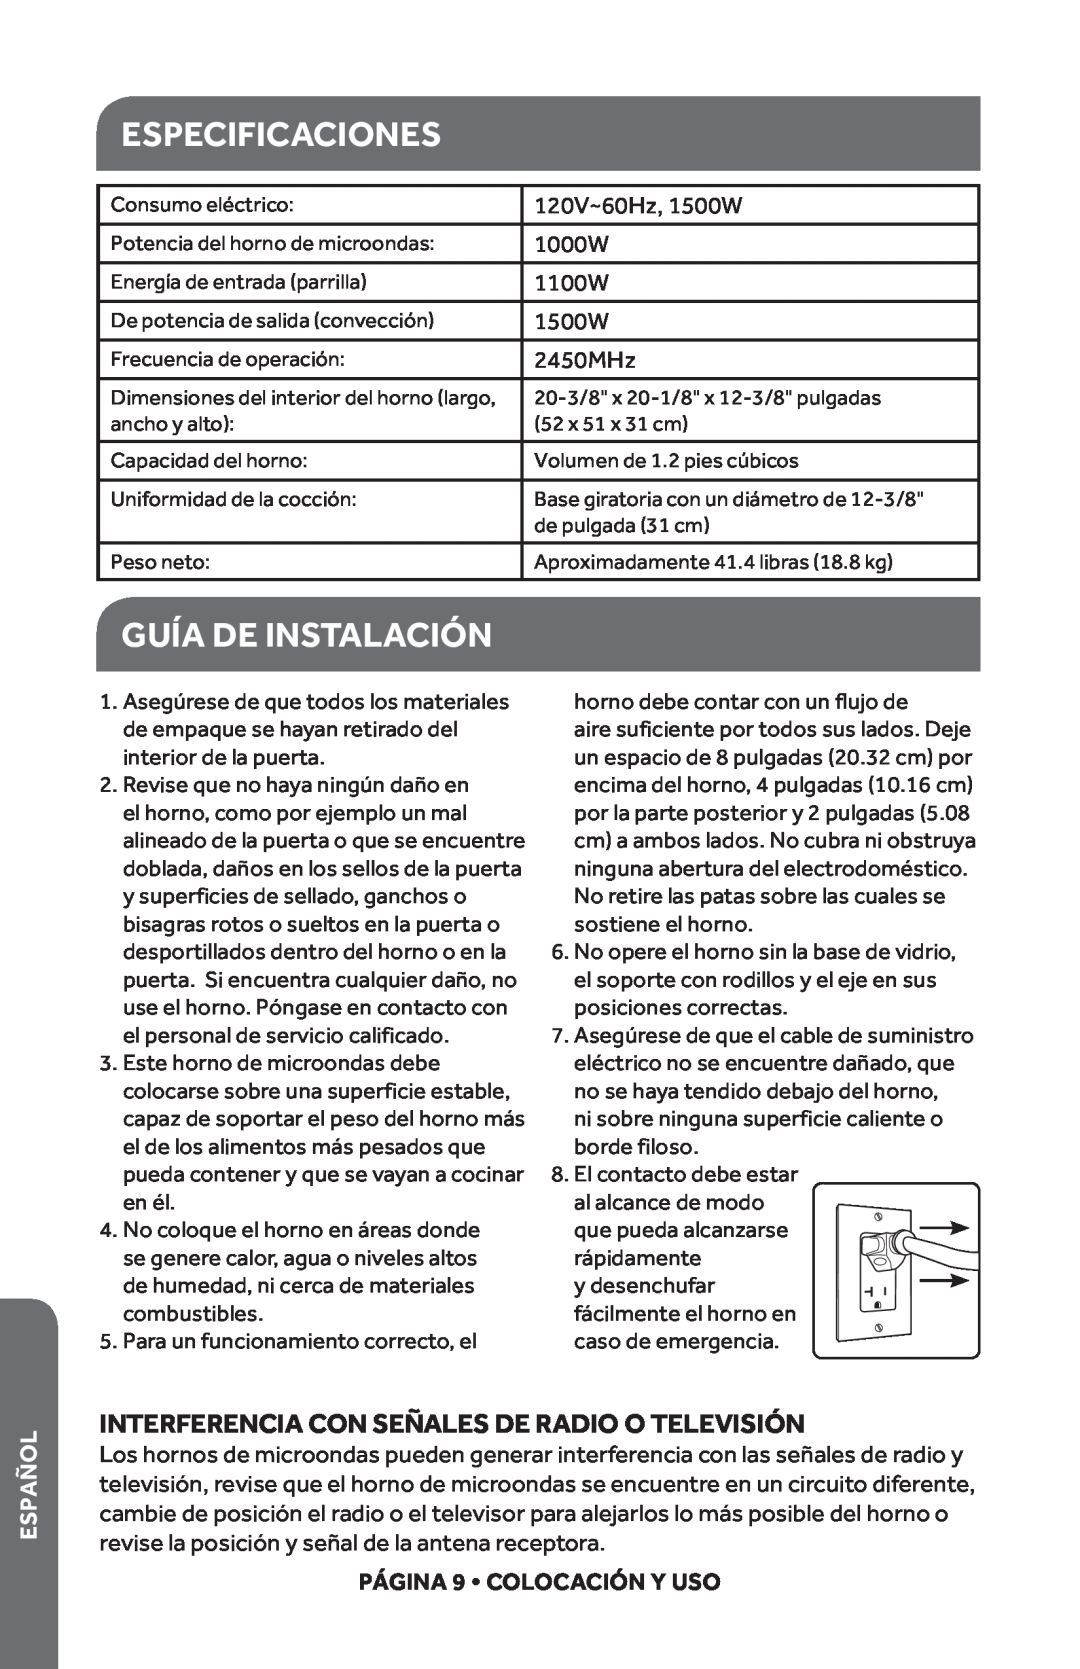 Haier HMC1285SESS Especificaciones, Guía De Instalación, Interferencia Con Señales De Radio O Televisión, Español 